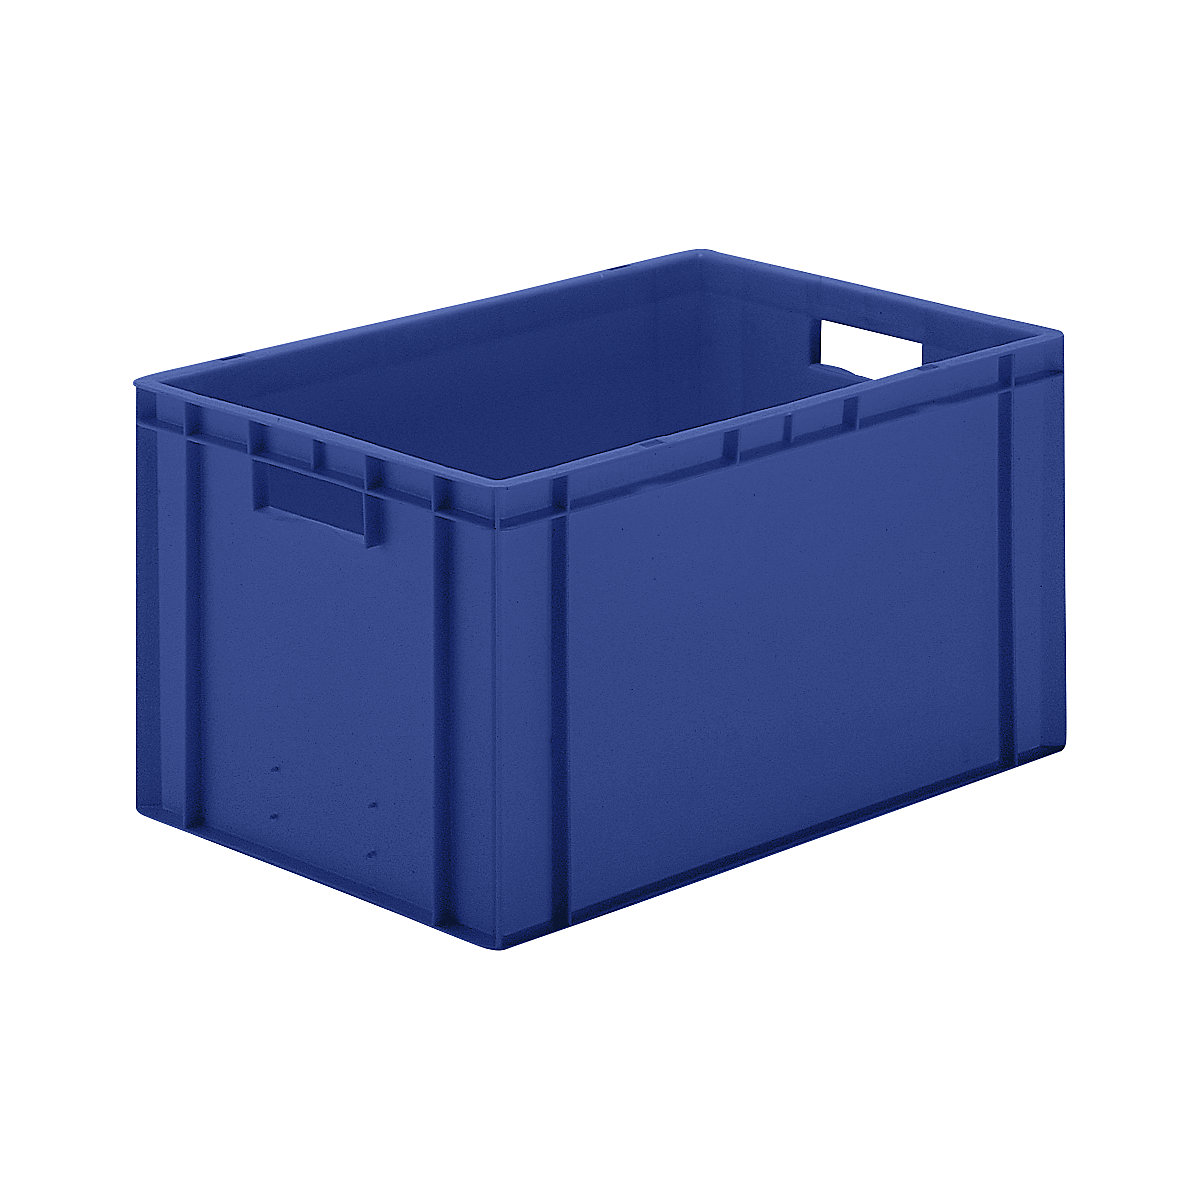 Euro-Format-Stapelbehälter, Wände und Boden geschlossen, LxBxH 600 x 400 x 320 mm, blau, VE 5 Stk